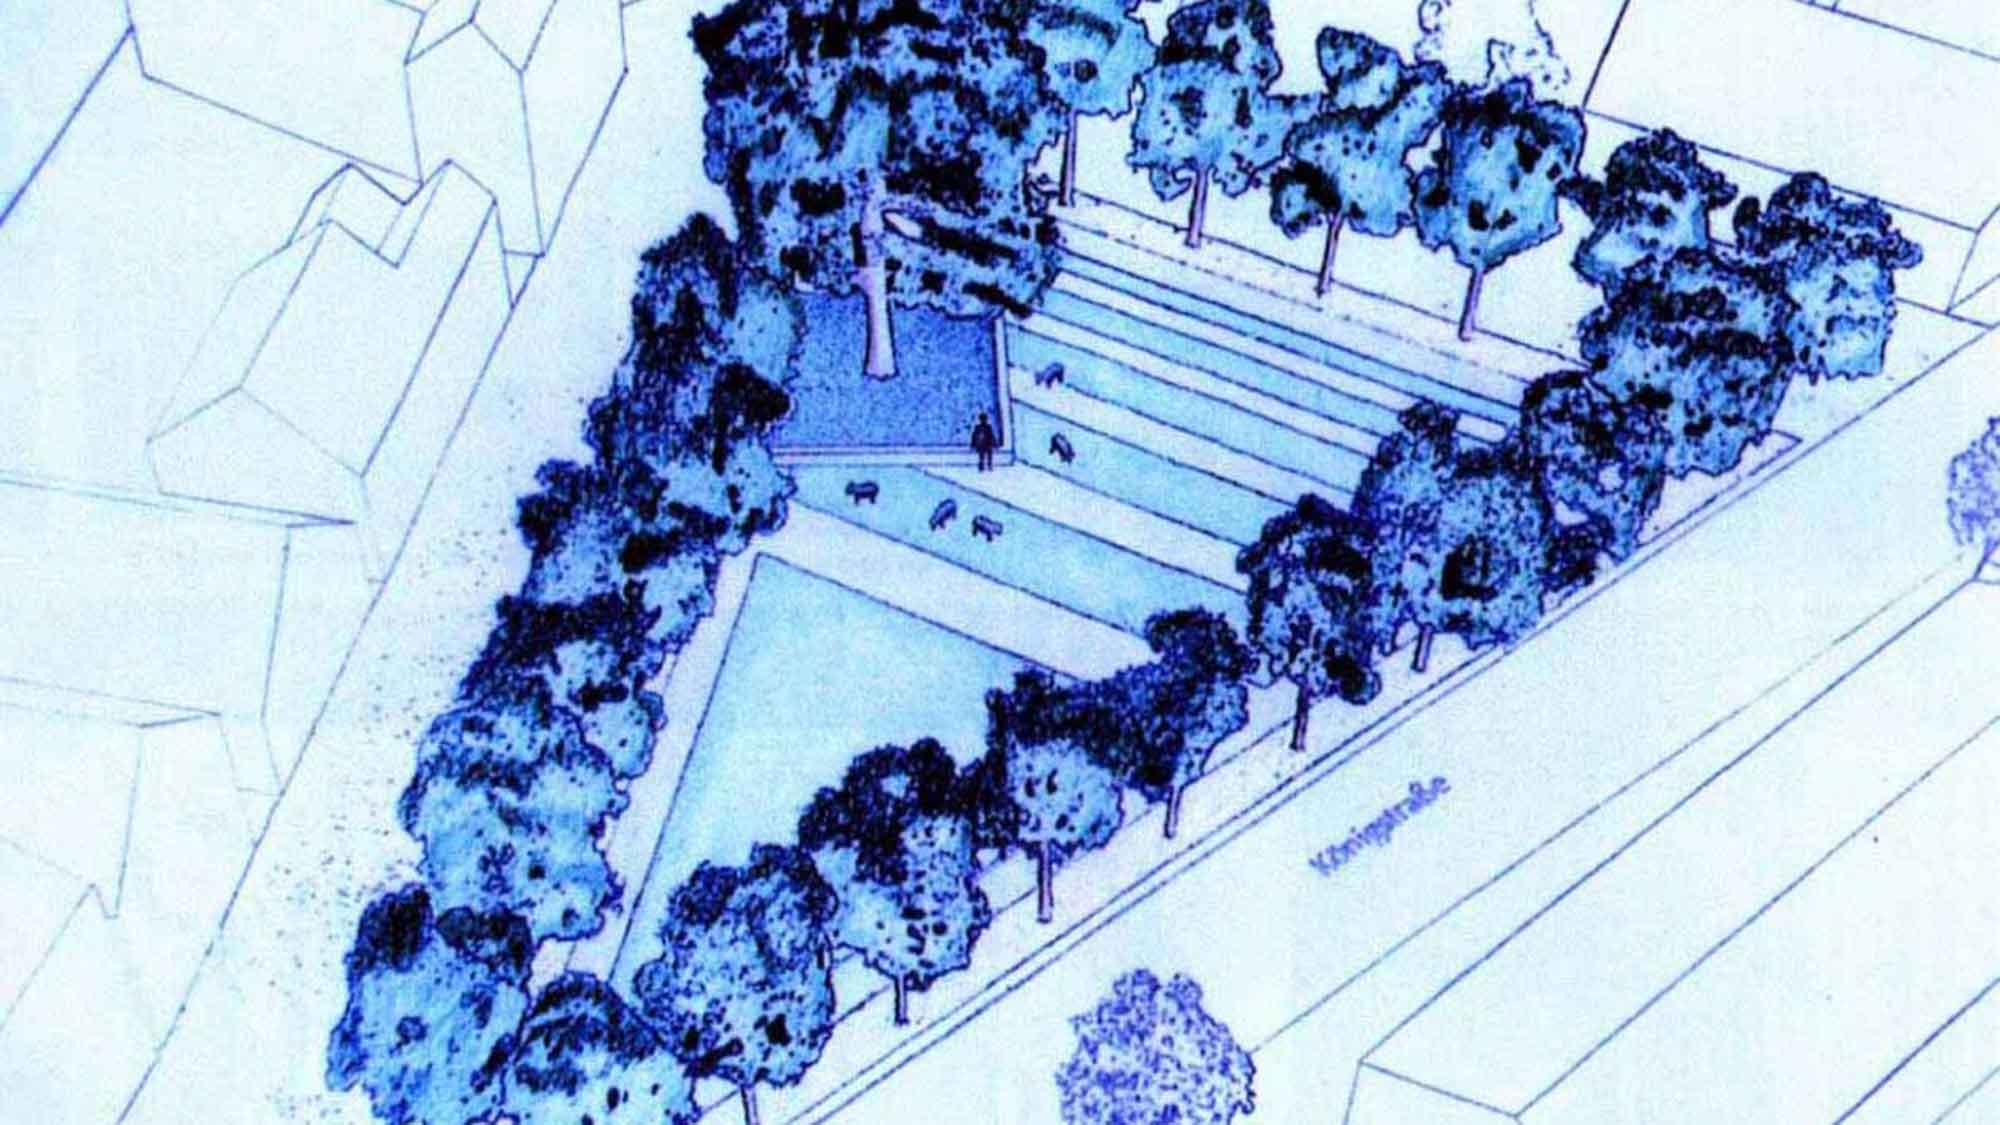 Gütersloh: Masterplan mit Teich mit Baum auf dem Dreiecksplatz, Visionäres aus dem Jahr 2002